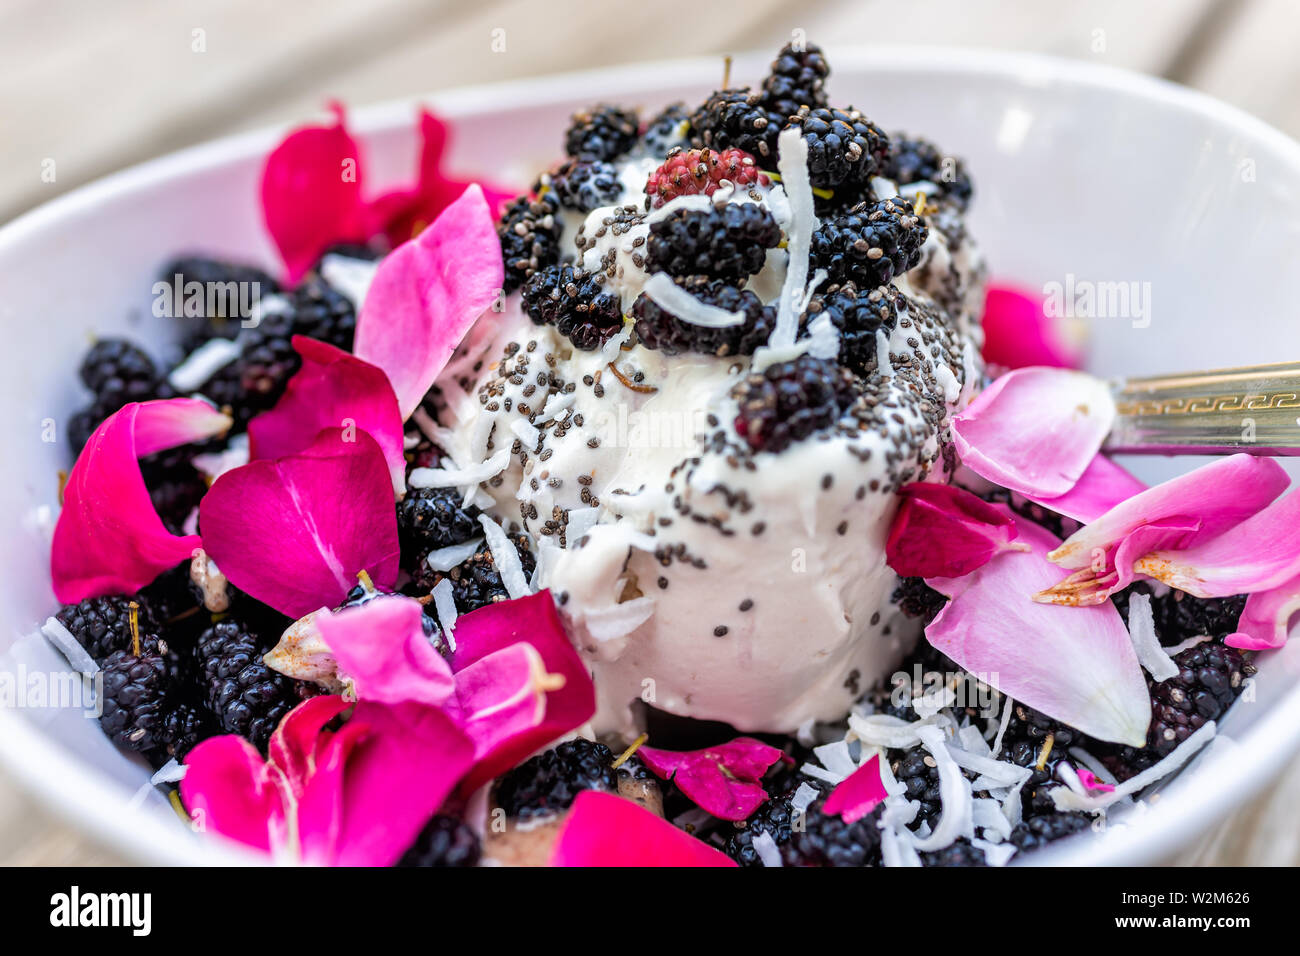 Rosenblätter blumen Eis garniert mit frischen schwarzen Maulbeeren Beeren und Chia Samen in der Schüssel mit Löffel closeup Stockfoto